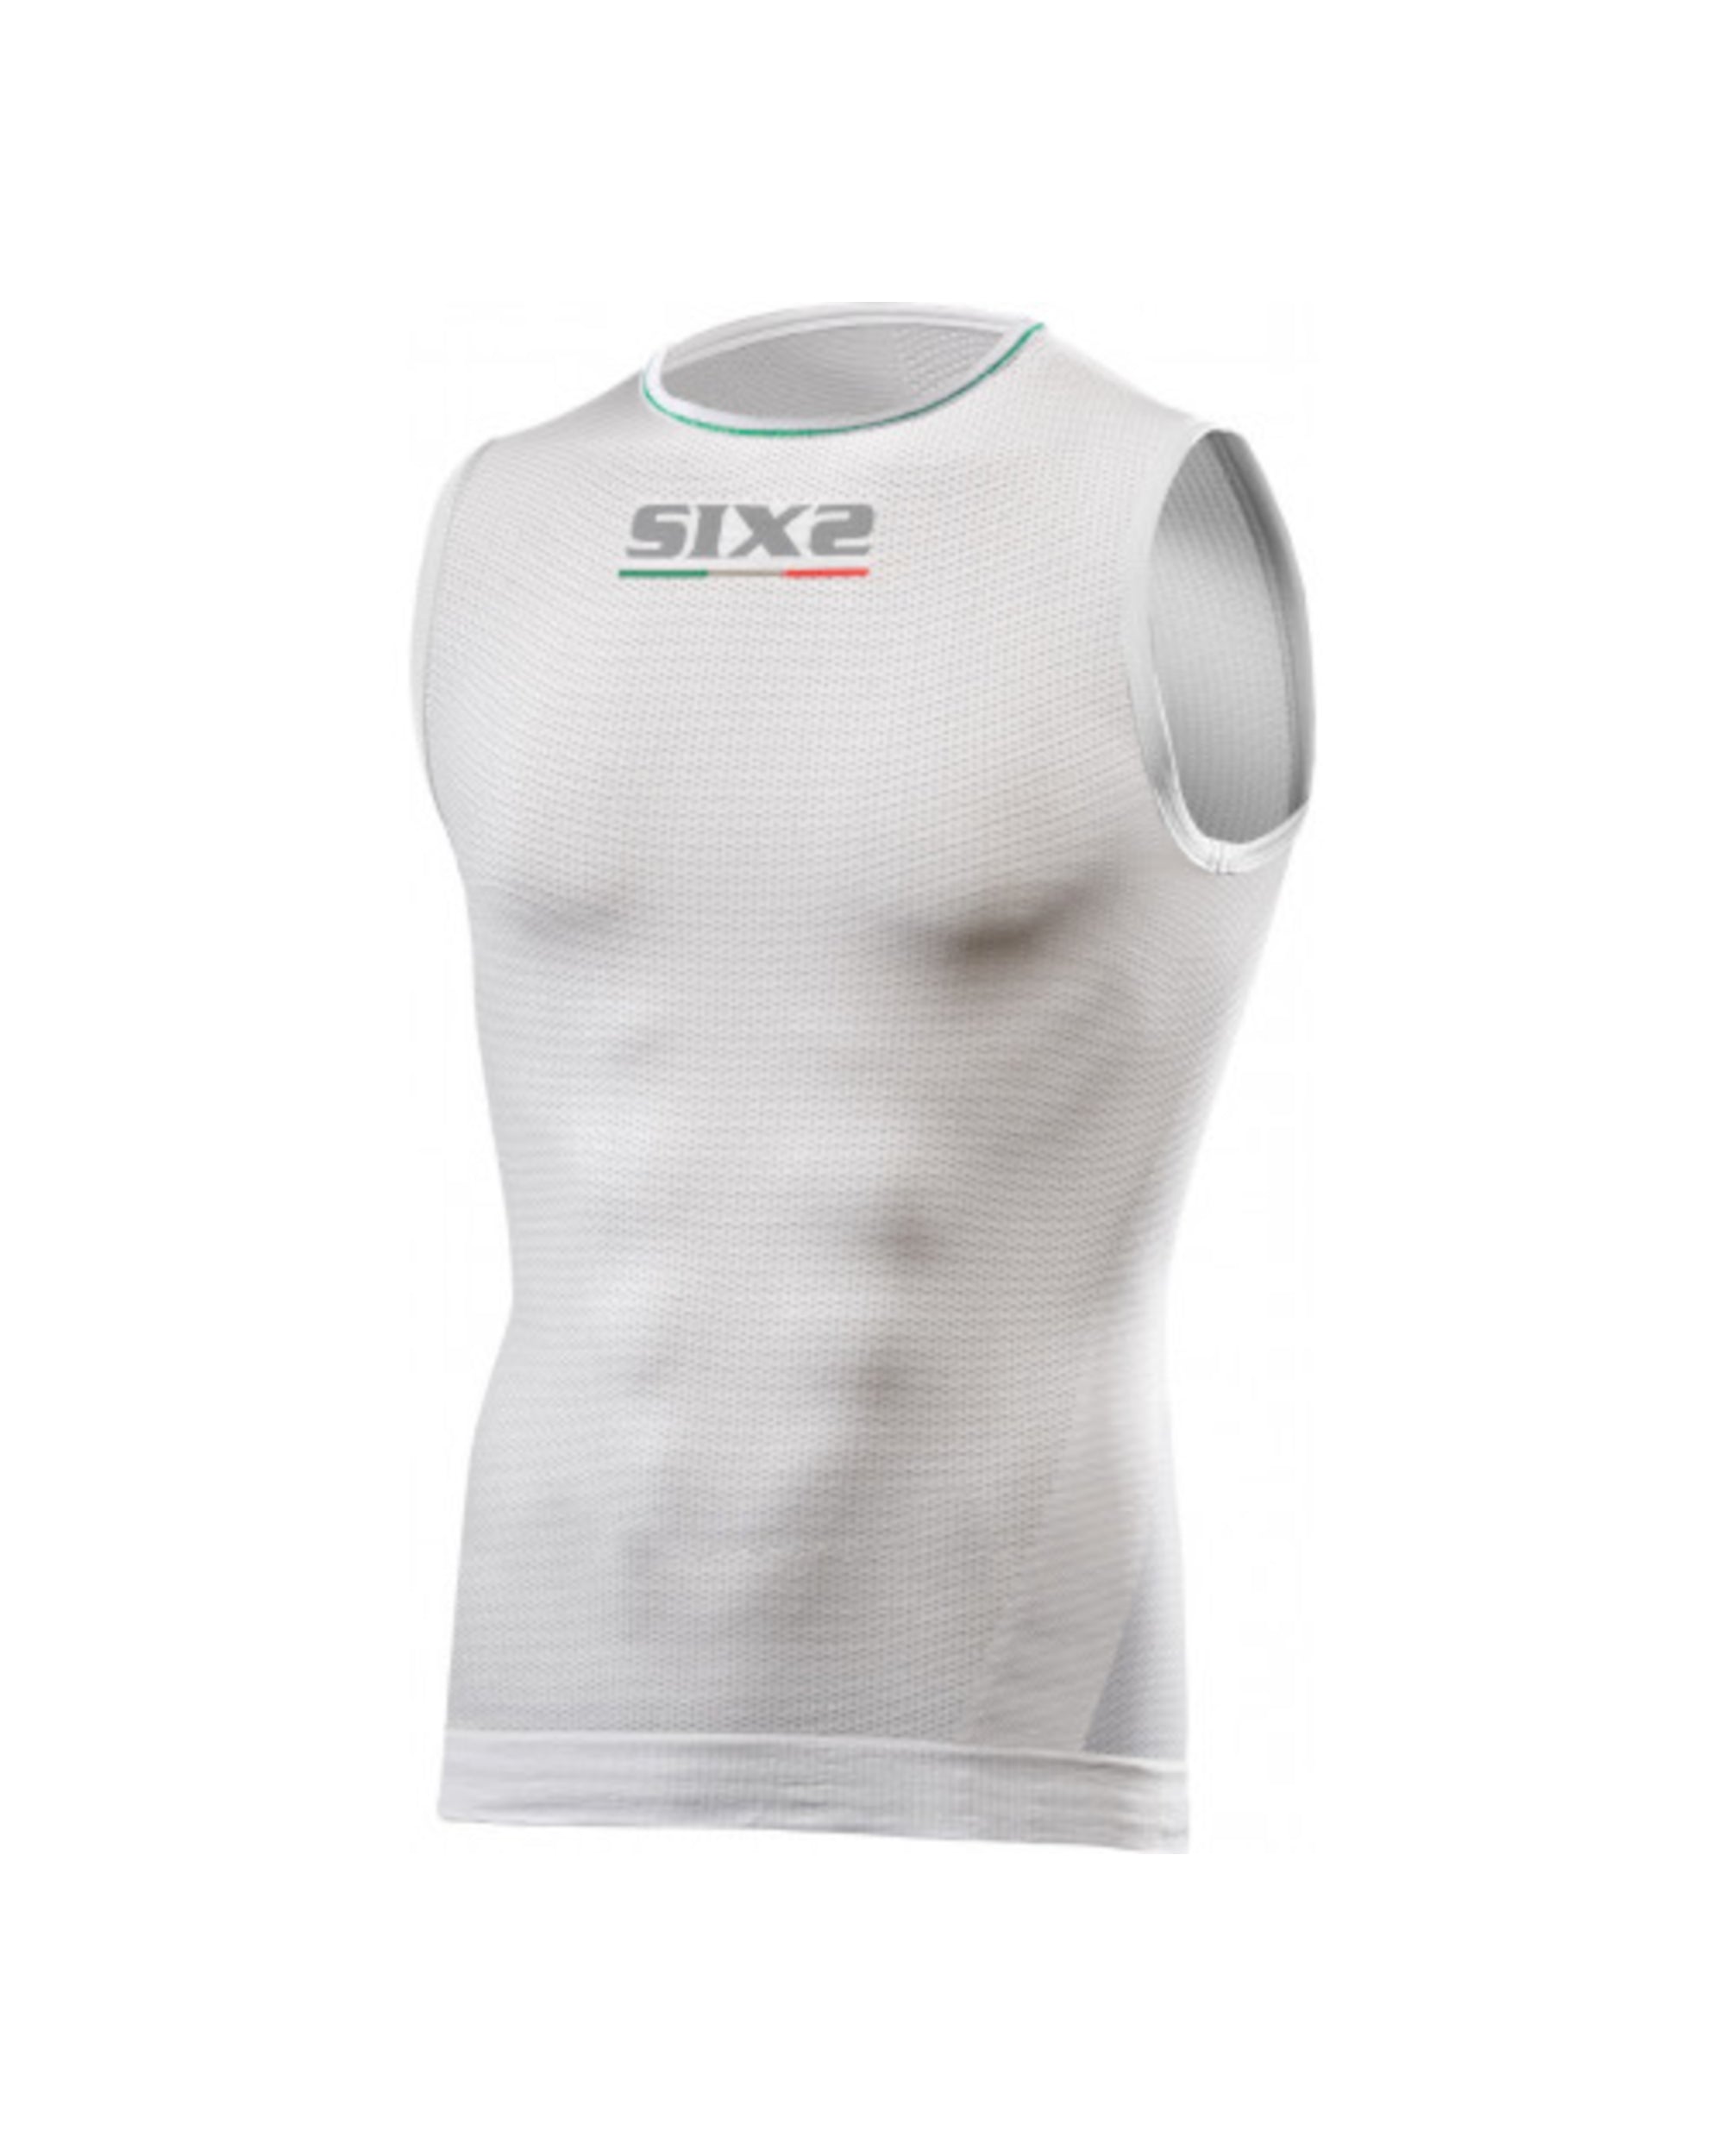 Marškinėliai SIX2 Superlight SML2 / White